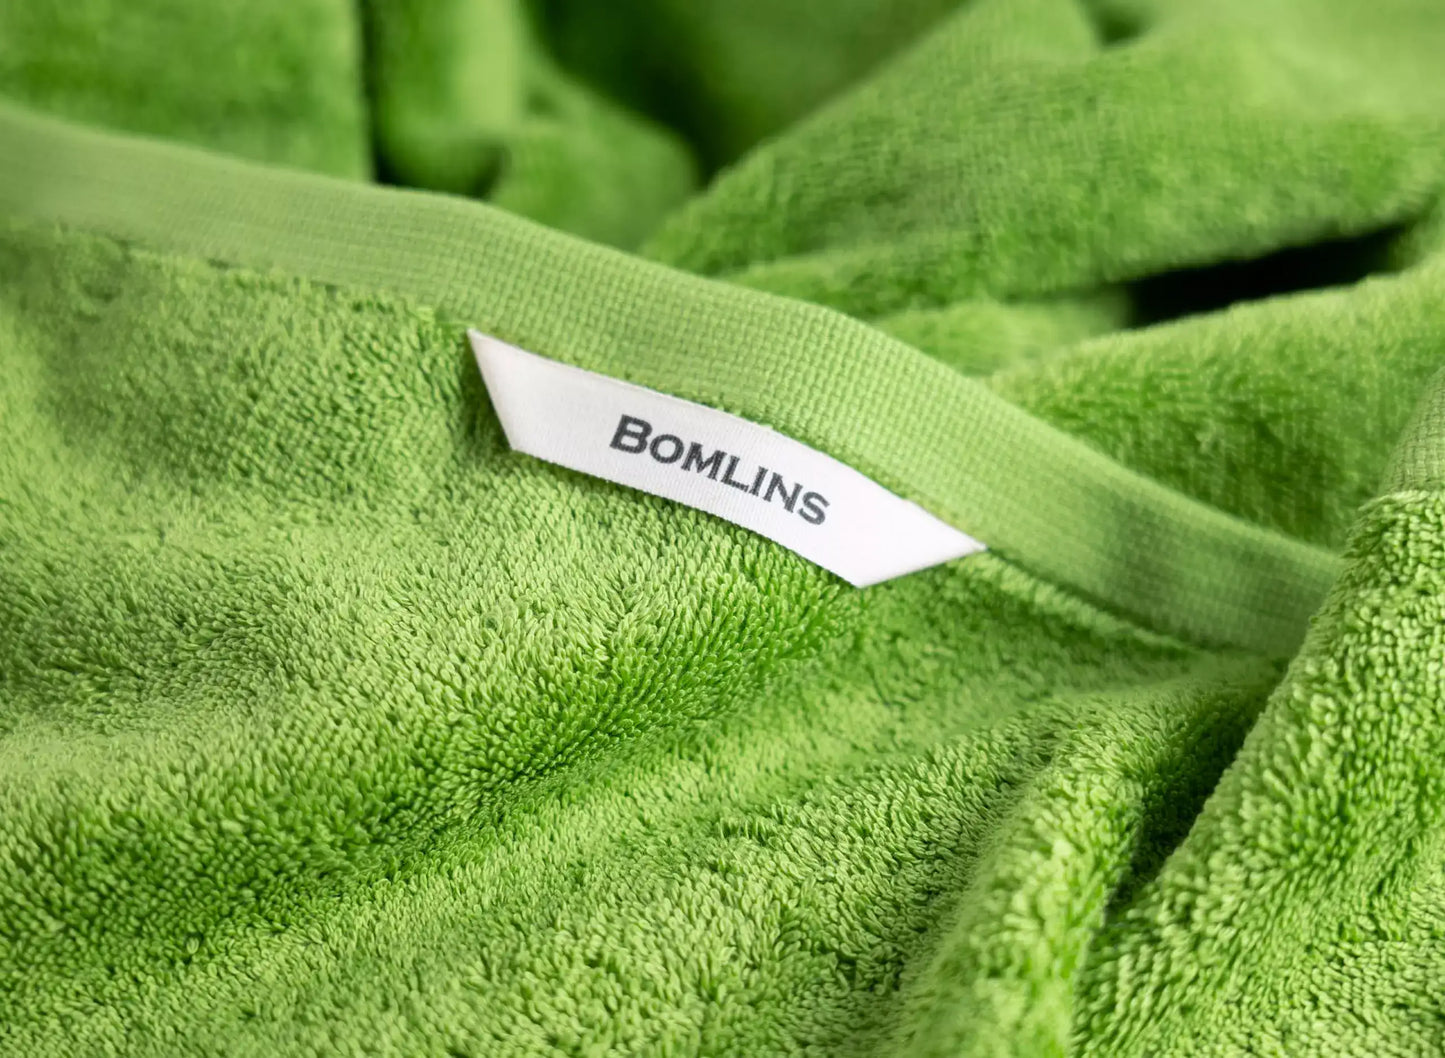 Premium Frottee Handtuch aus Baumwolle auch im Set mit Badetücher und Duschtücher. Handtuch mit Anhänger.